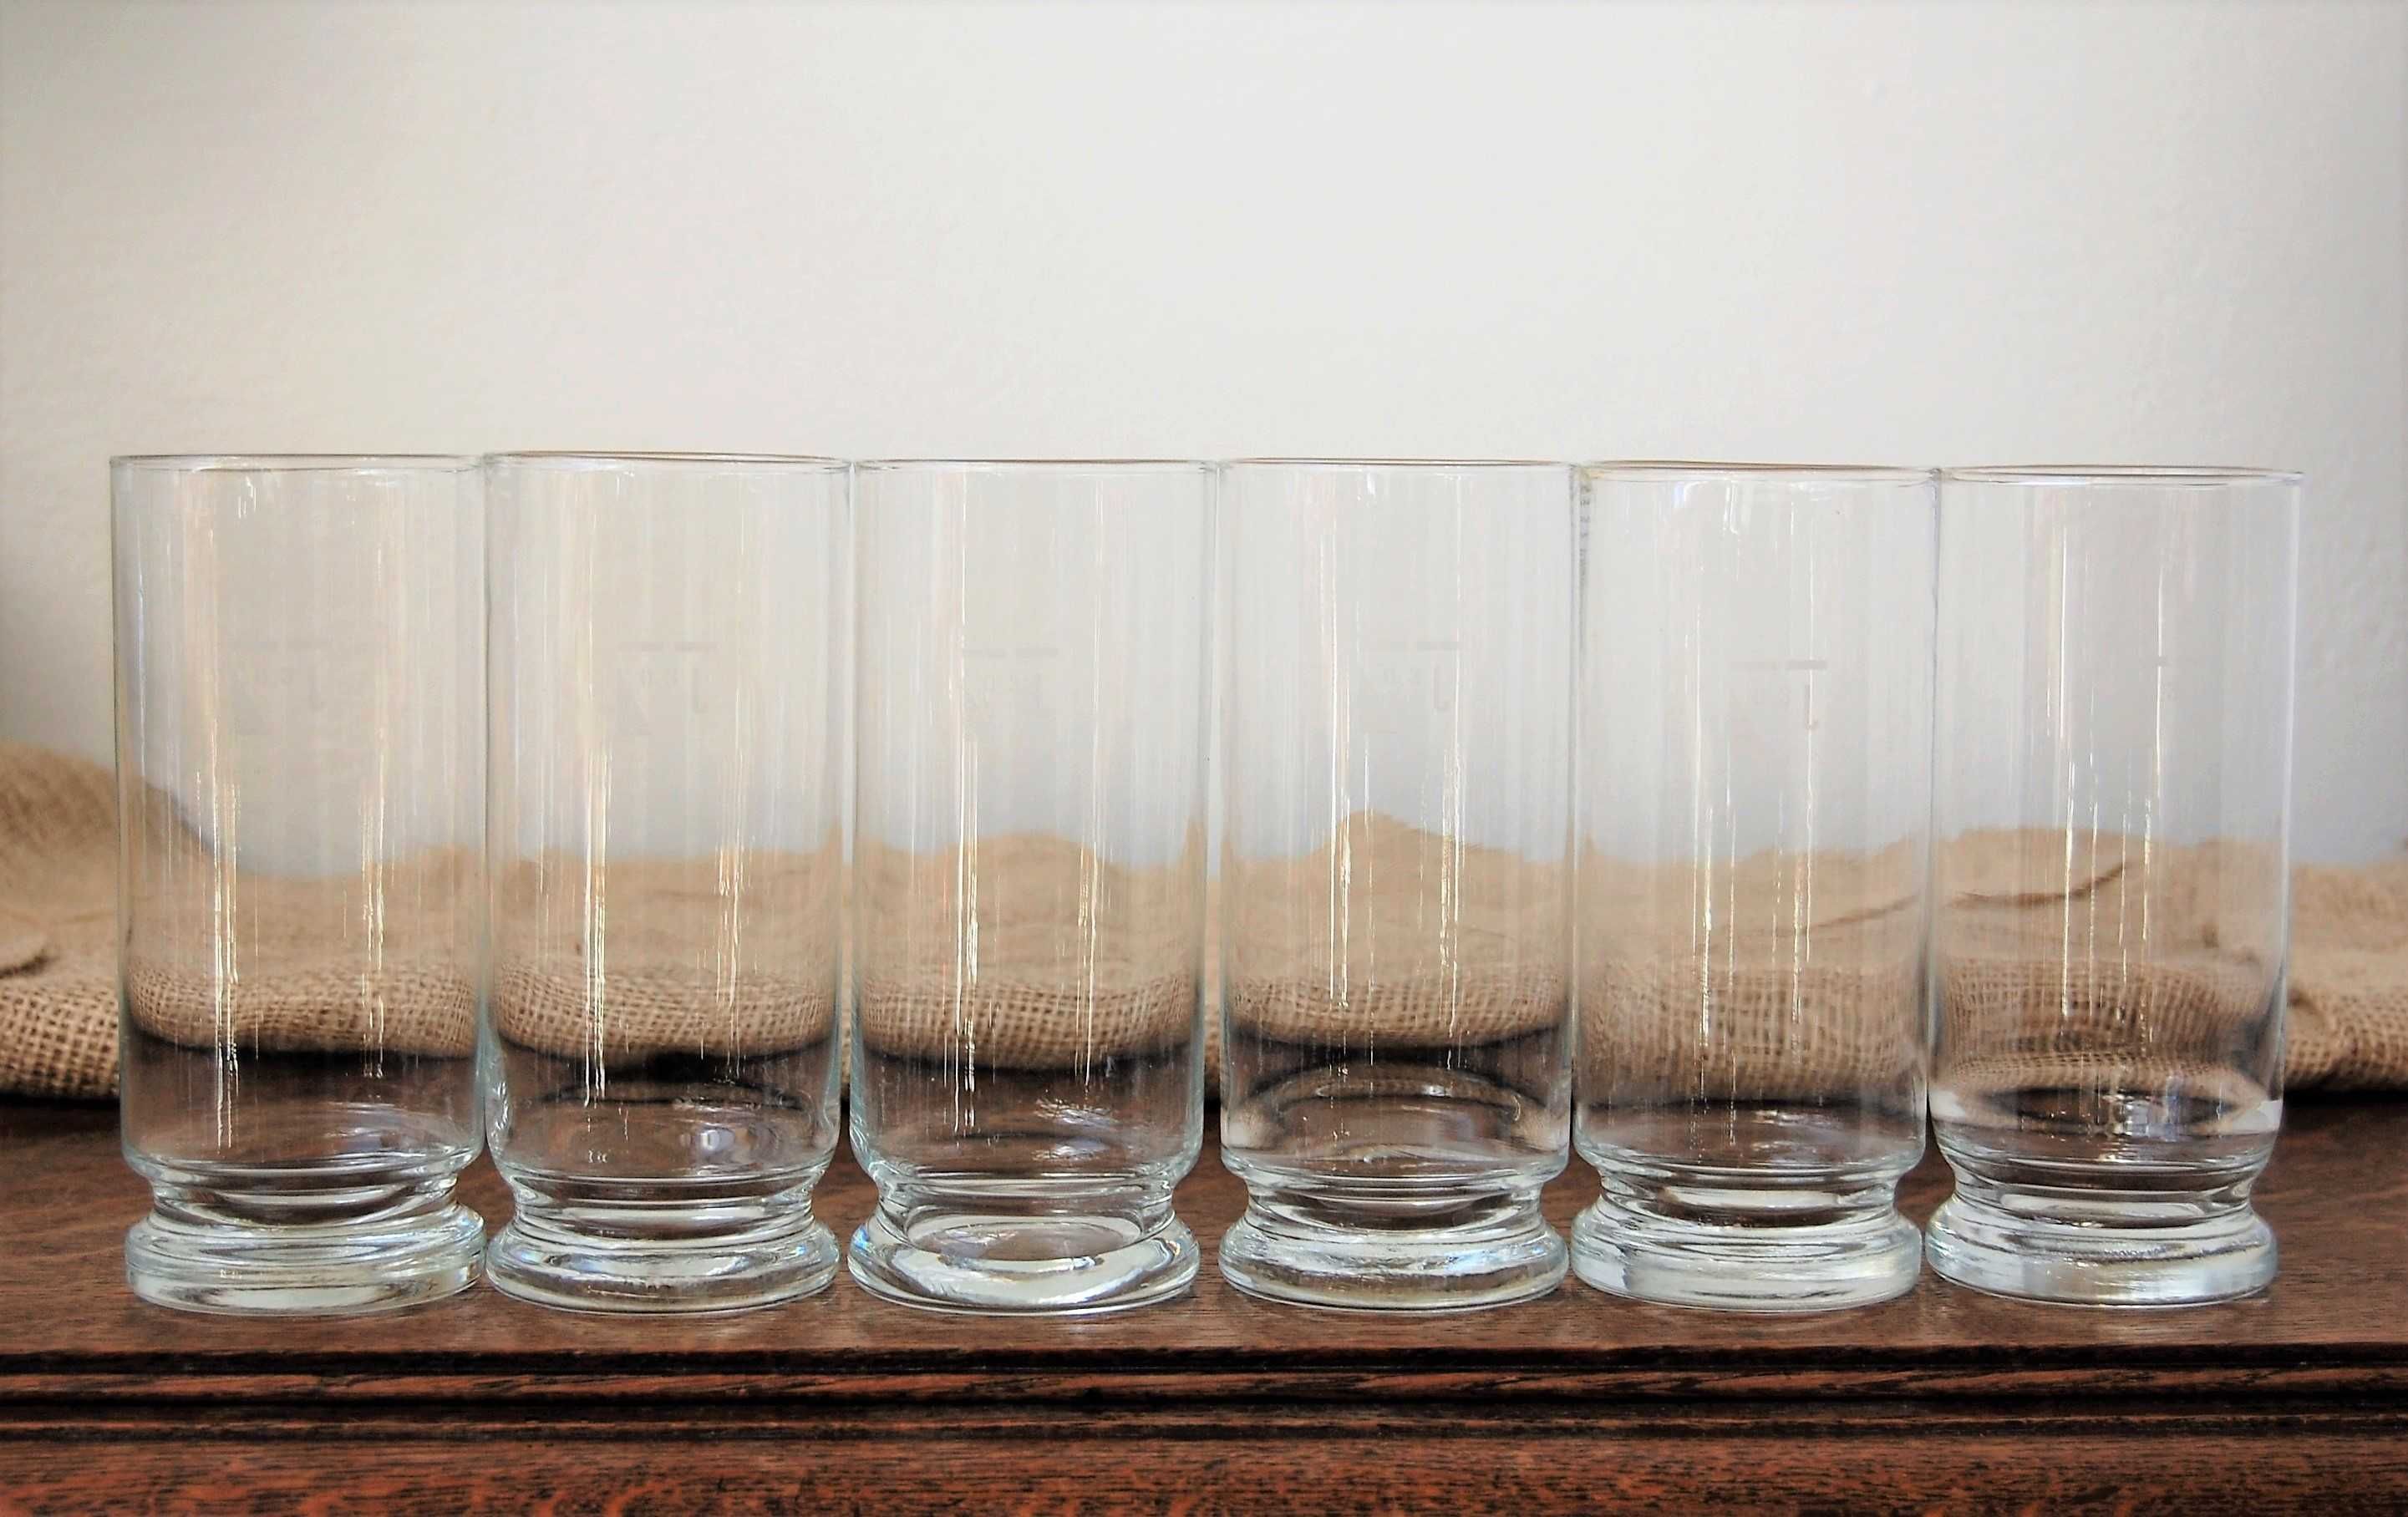 Szklanki ręcznie formowane, Dubeczno 0,3l, 6 sztuk, vintage